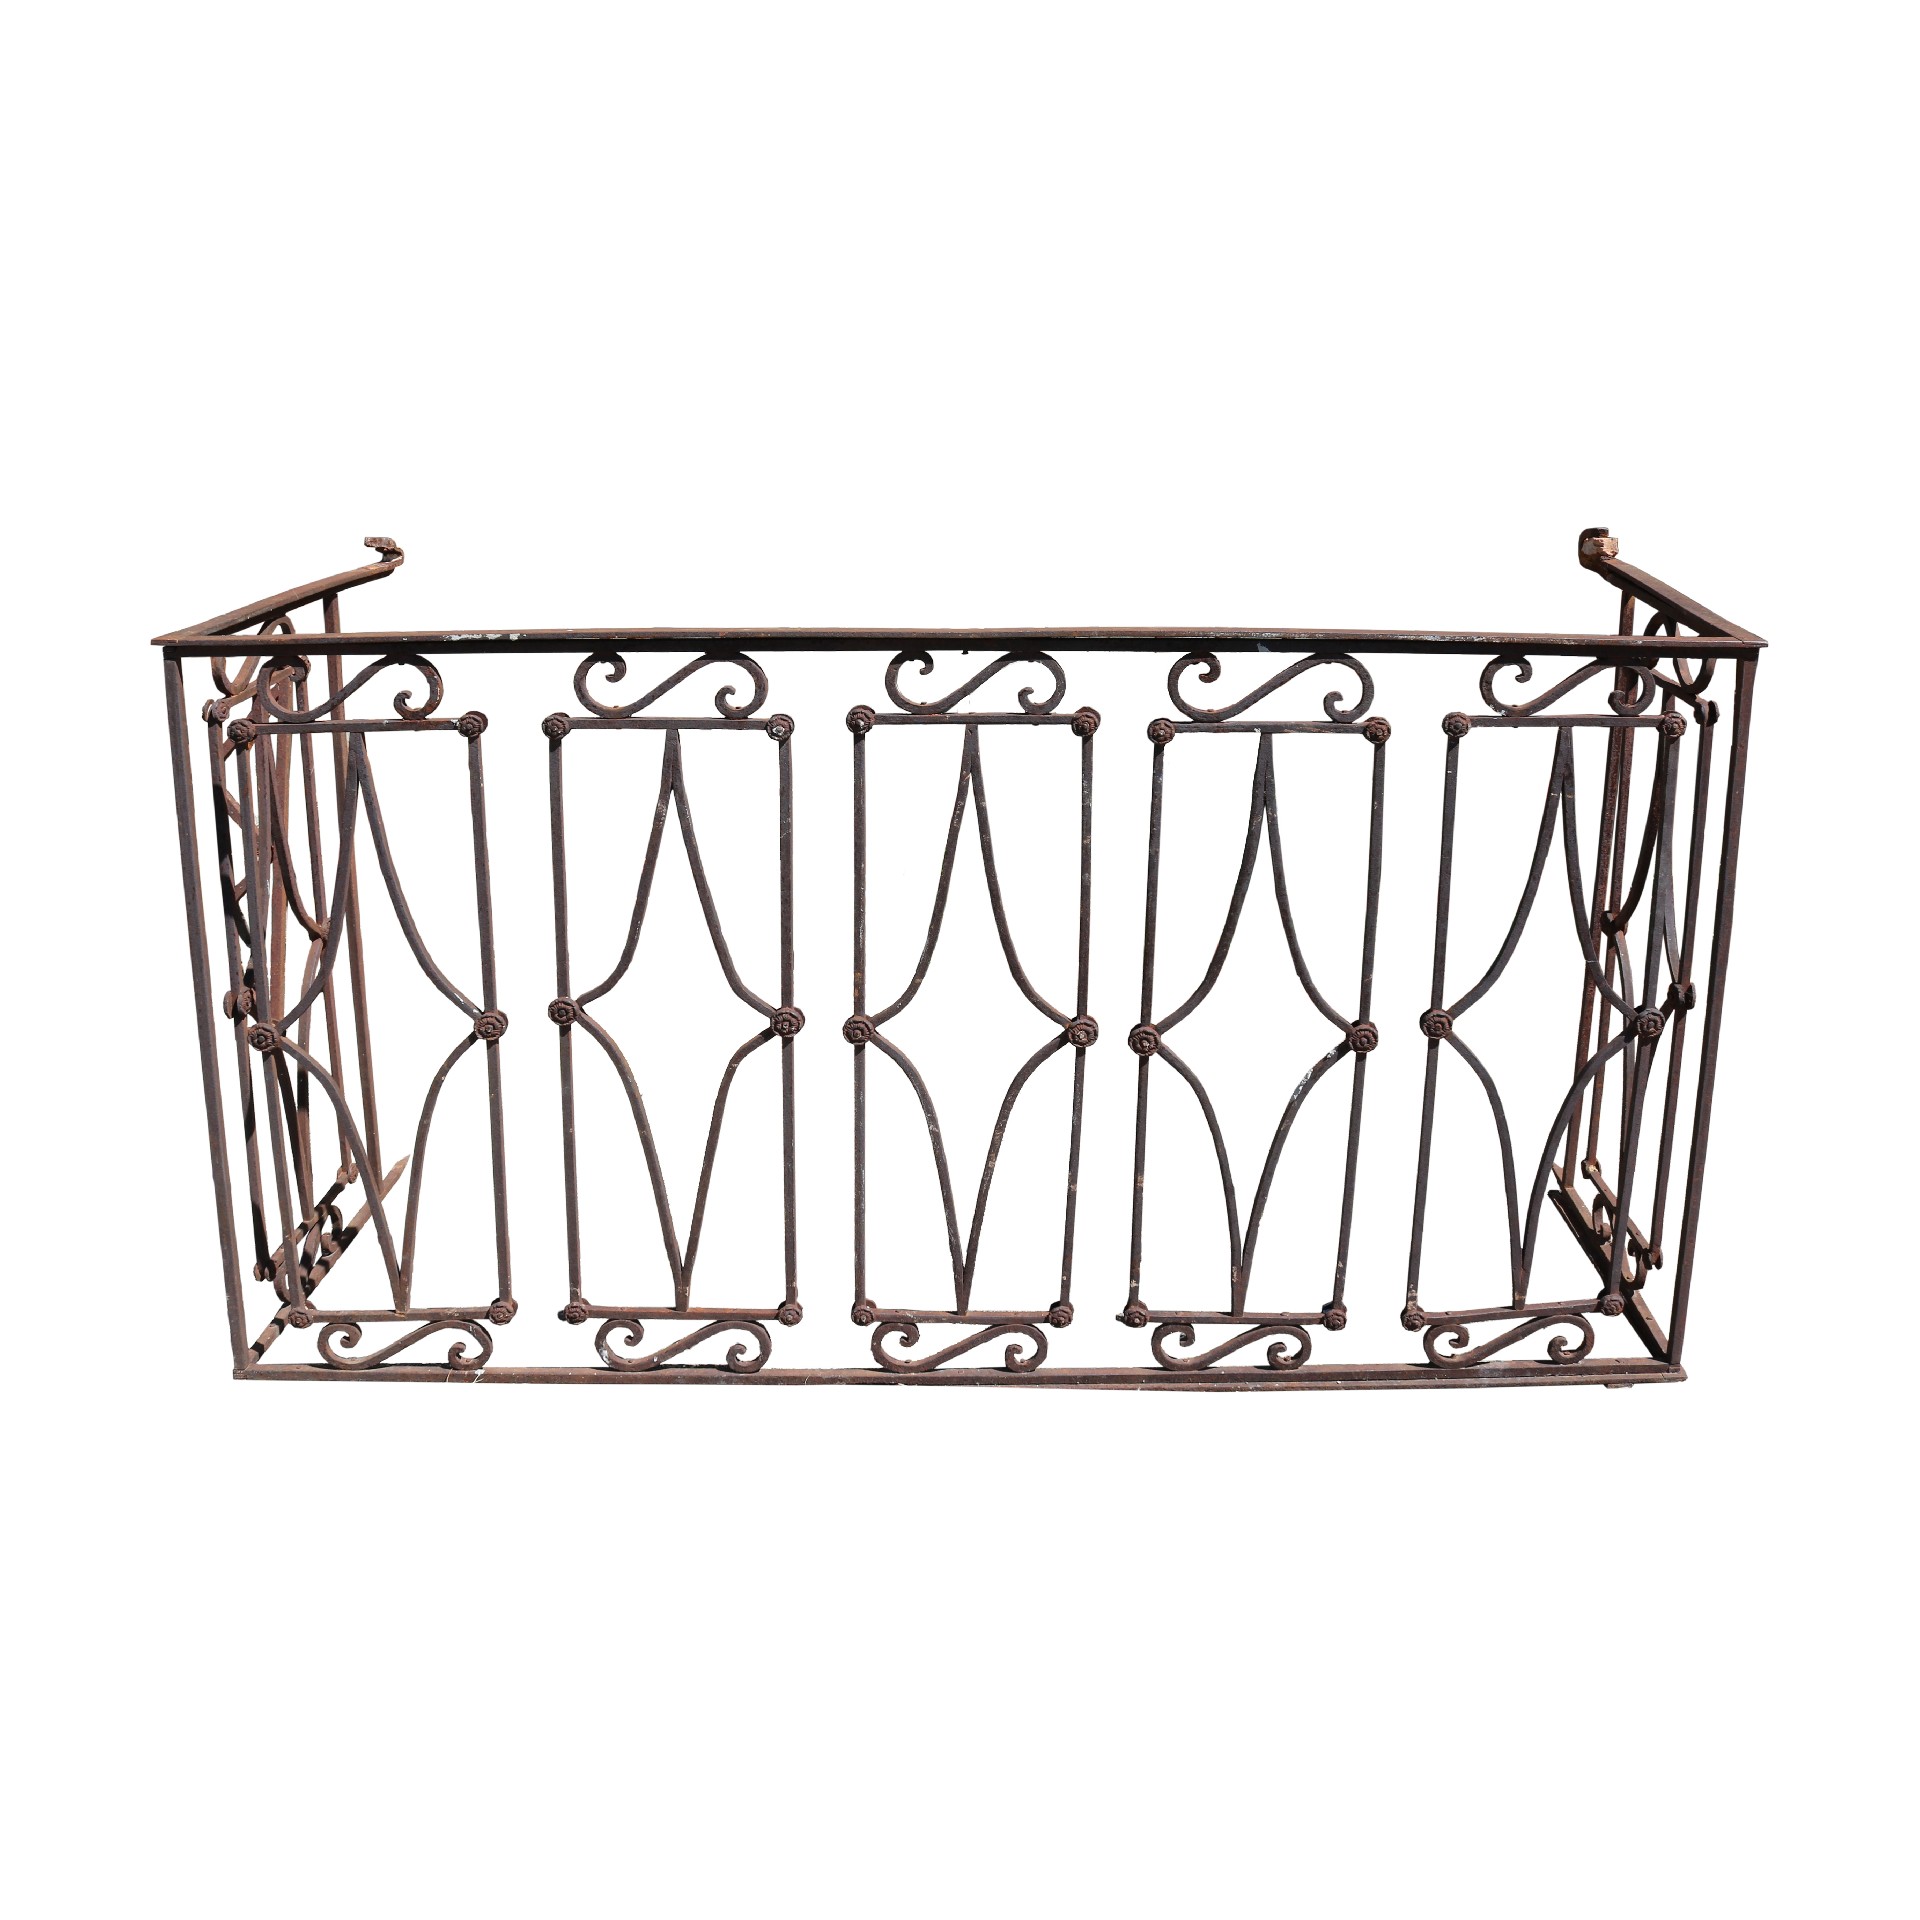 Antico balcone in ferro. - Grate e Ringhiere - Architettura - Prodotti - Antichità Fiorillo